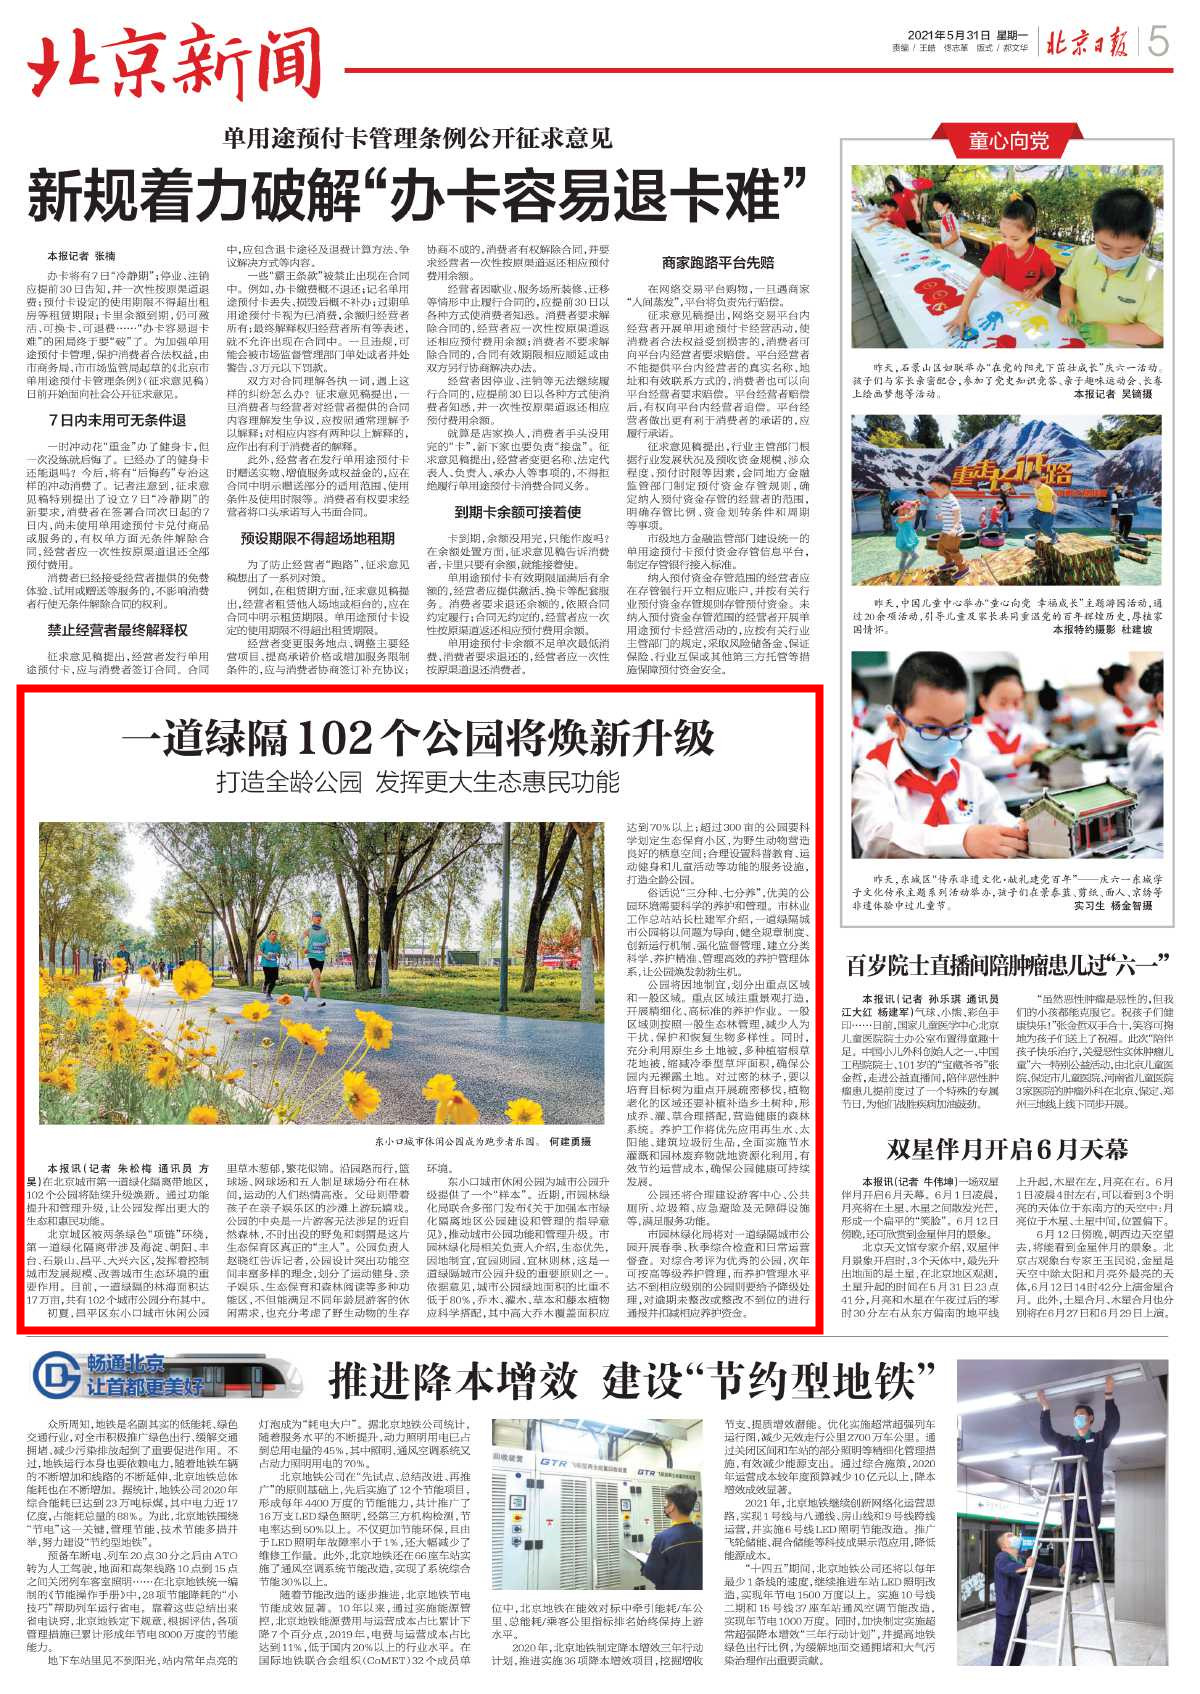 0531北京日报-一道绿隔102个公园将焕新升级_副本.jpg